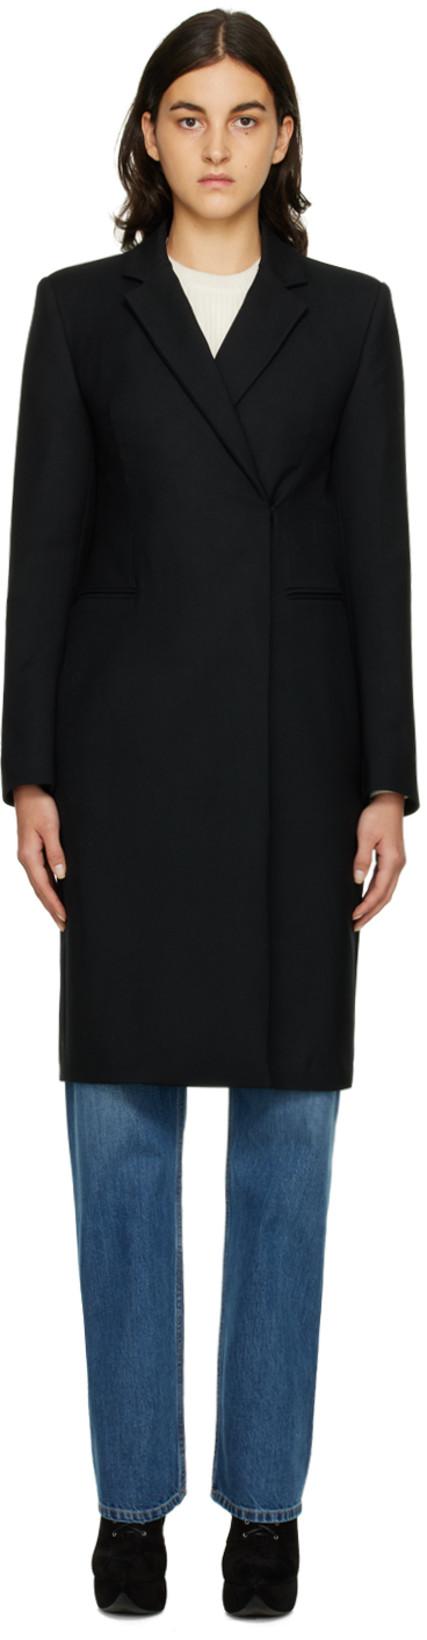 Black Maxi Dress Coat by ALAIA